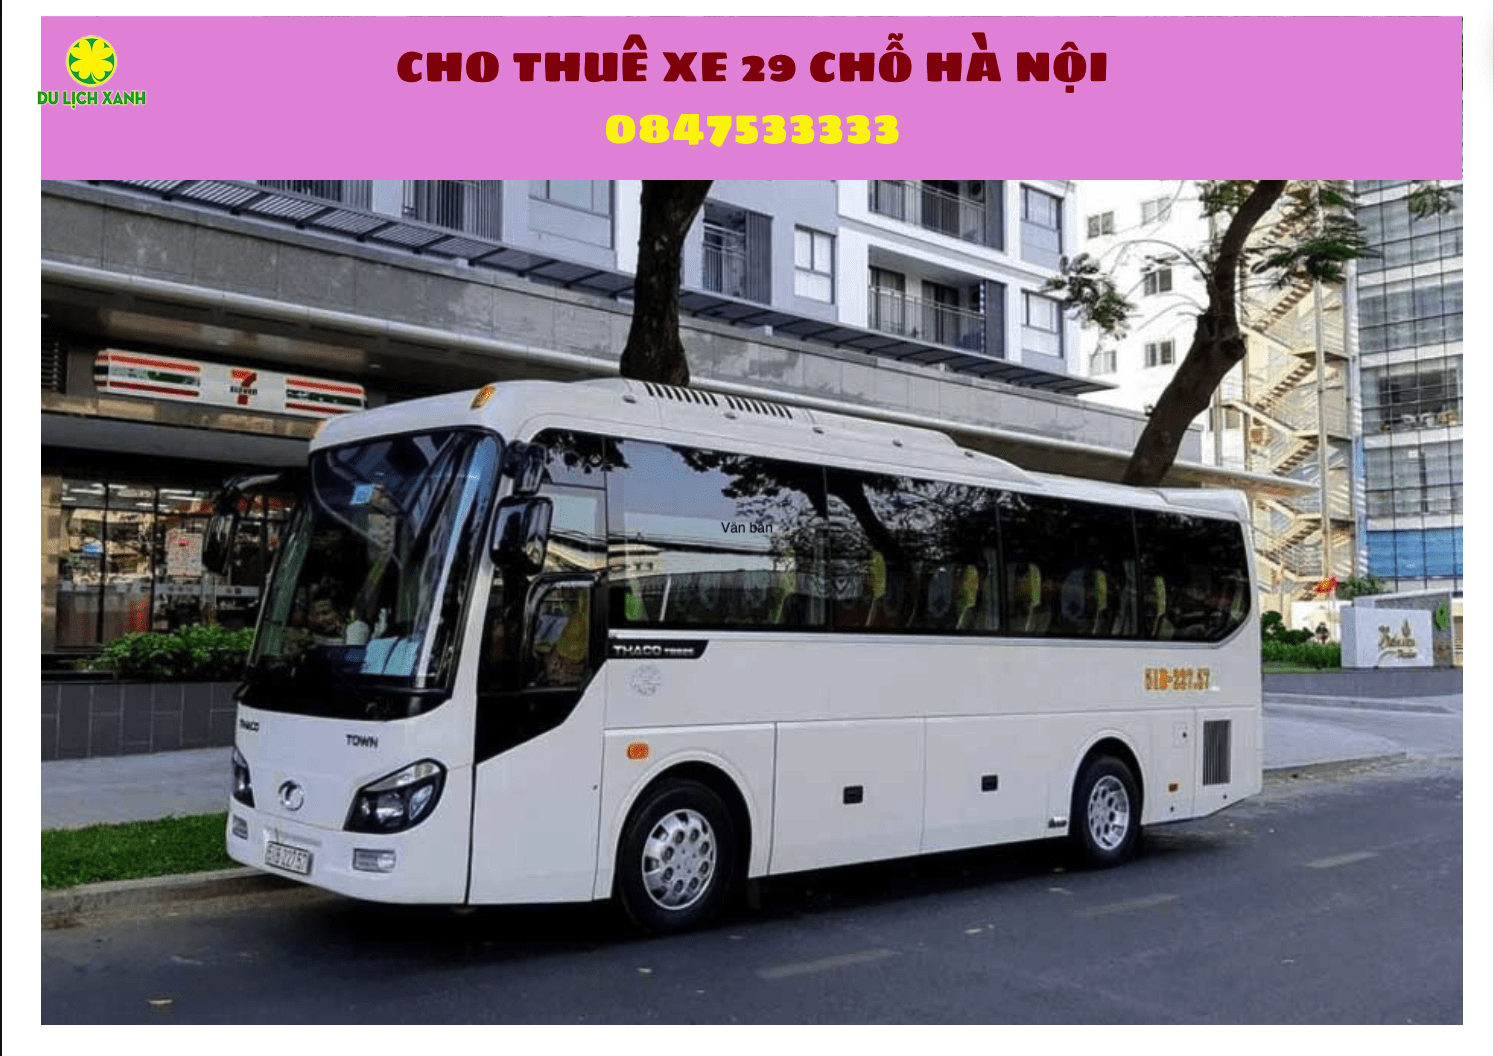 Cho thuê xe du lịch 29 chỗ tại Hà Nội nhanh gọn 